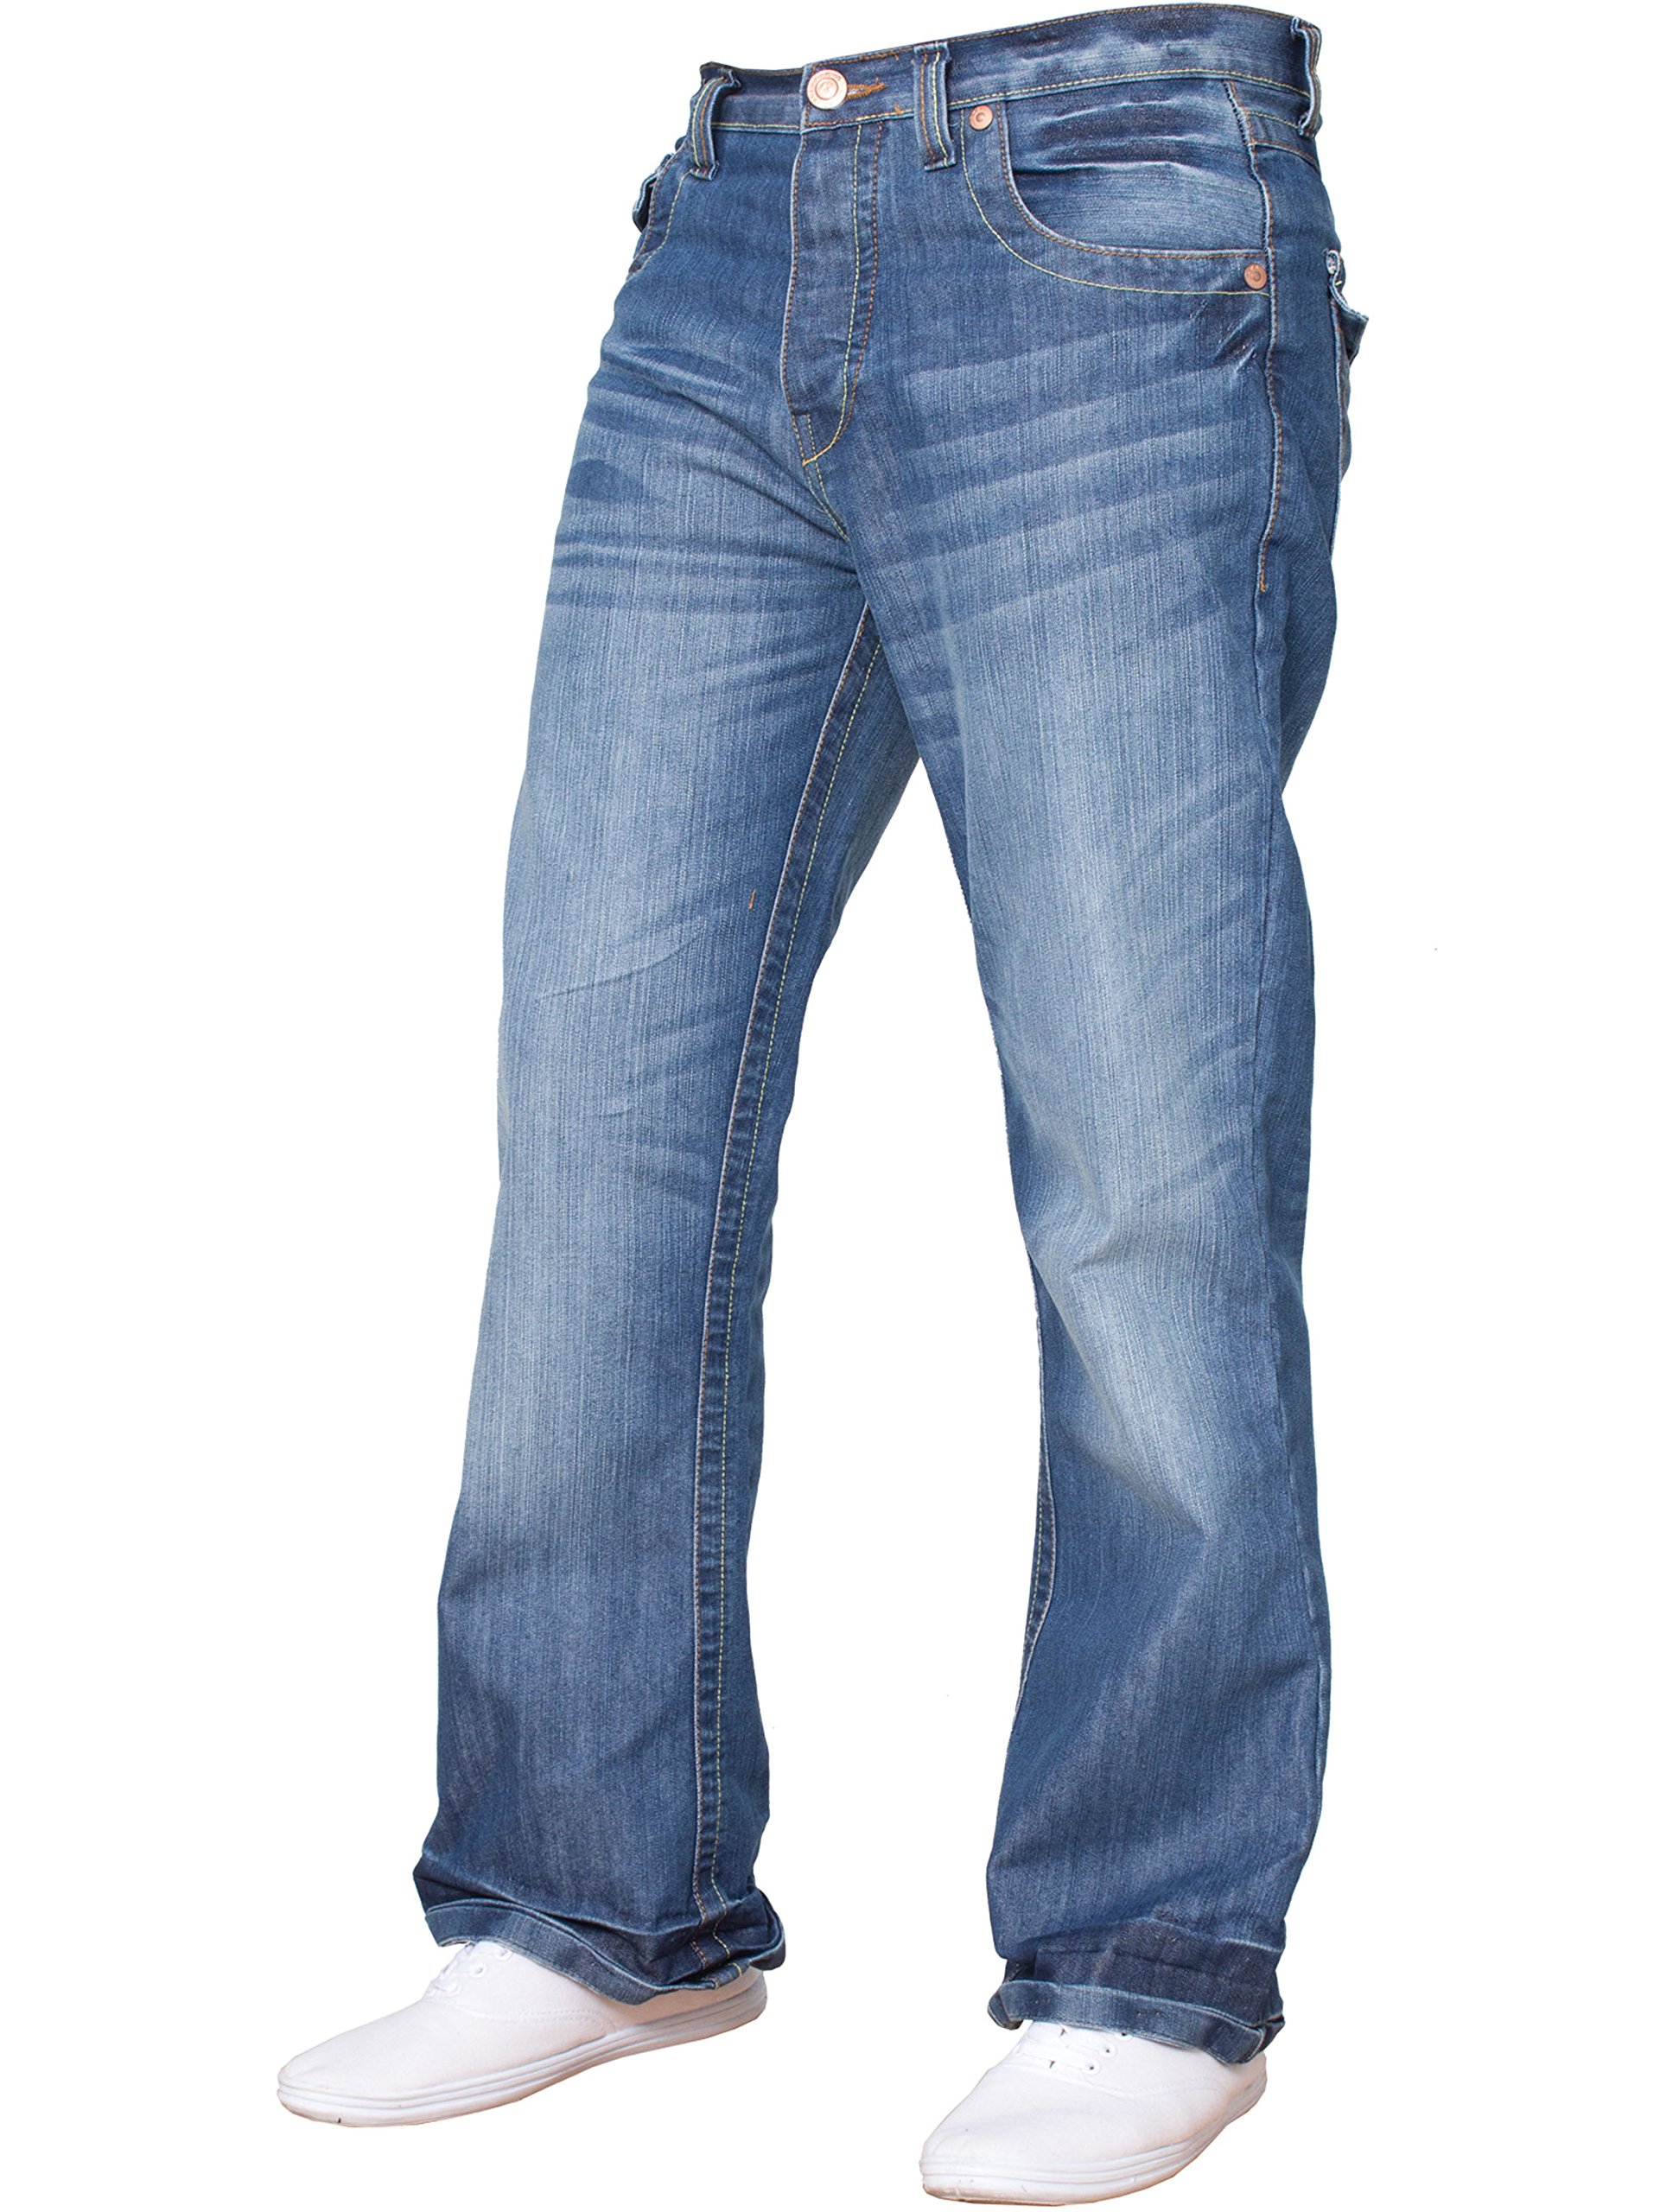 BNWT Herren-Jeans, Bootcut, ausgestellt, große King Size, weites Bein, Blau, Denim Gr. 46W x 30L, Mehrfarbig